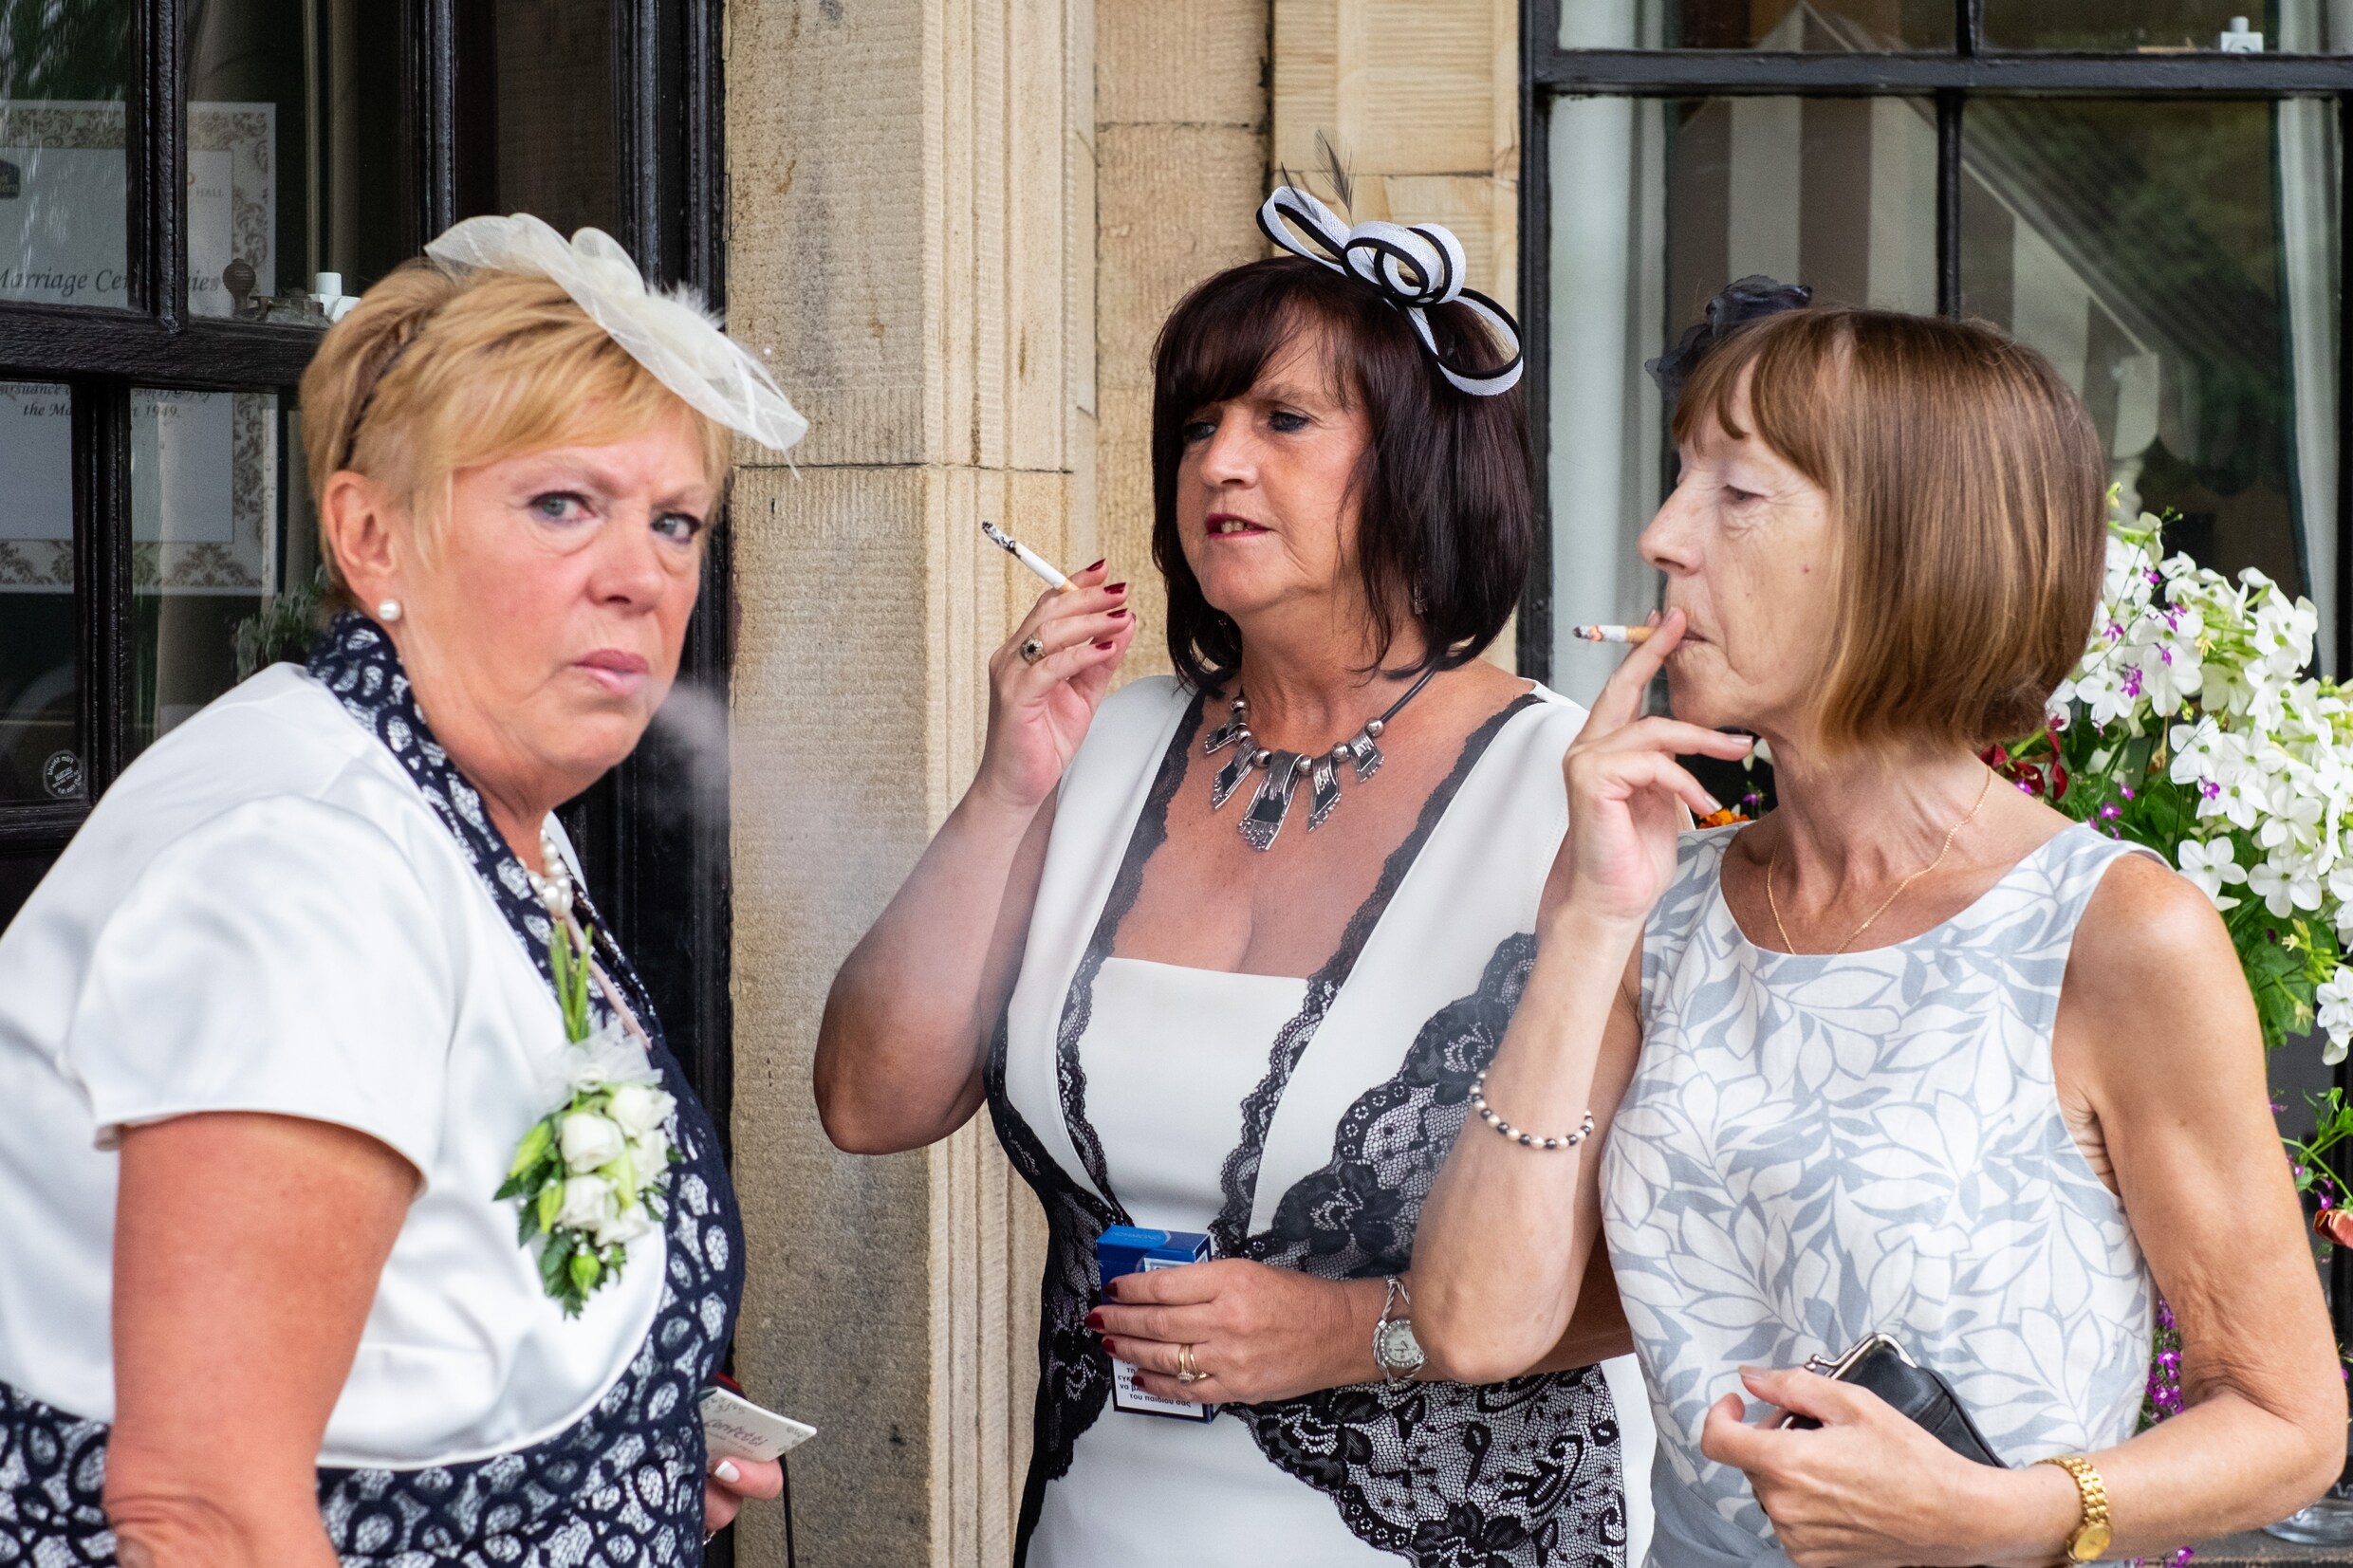 Komische familiemomenten met te veel drank: deze fotograaf toont trouwfeesten zoals ze werkelijk zijn